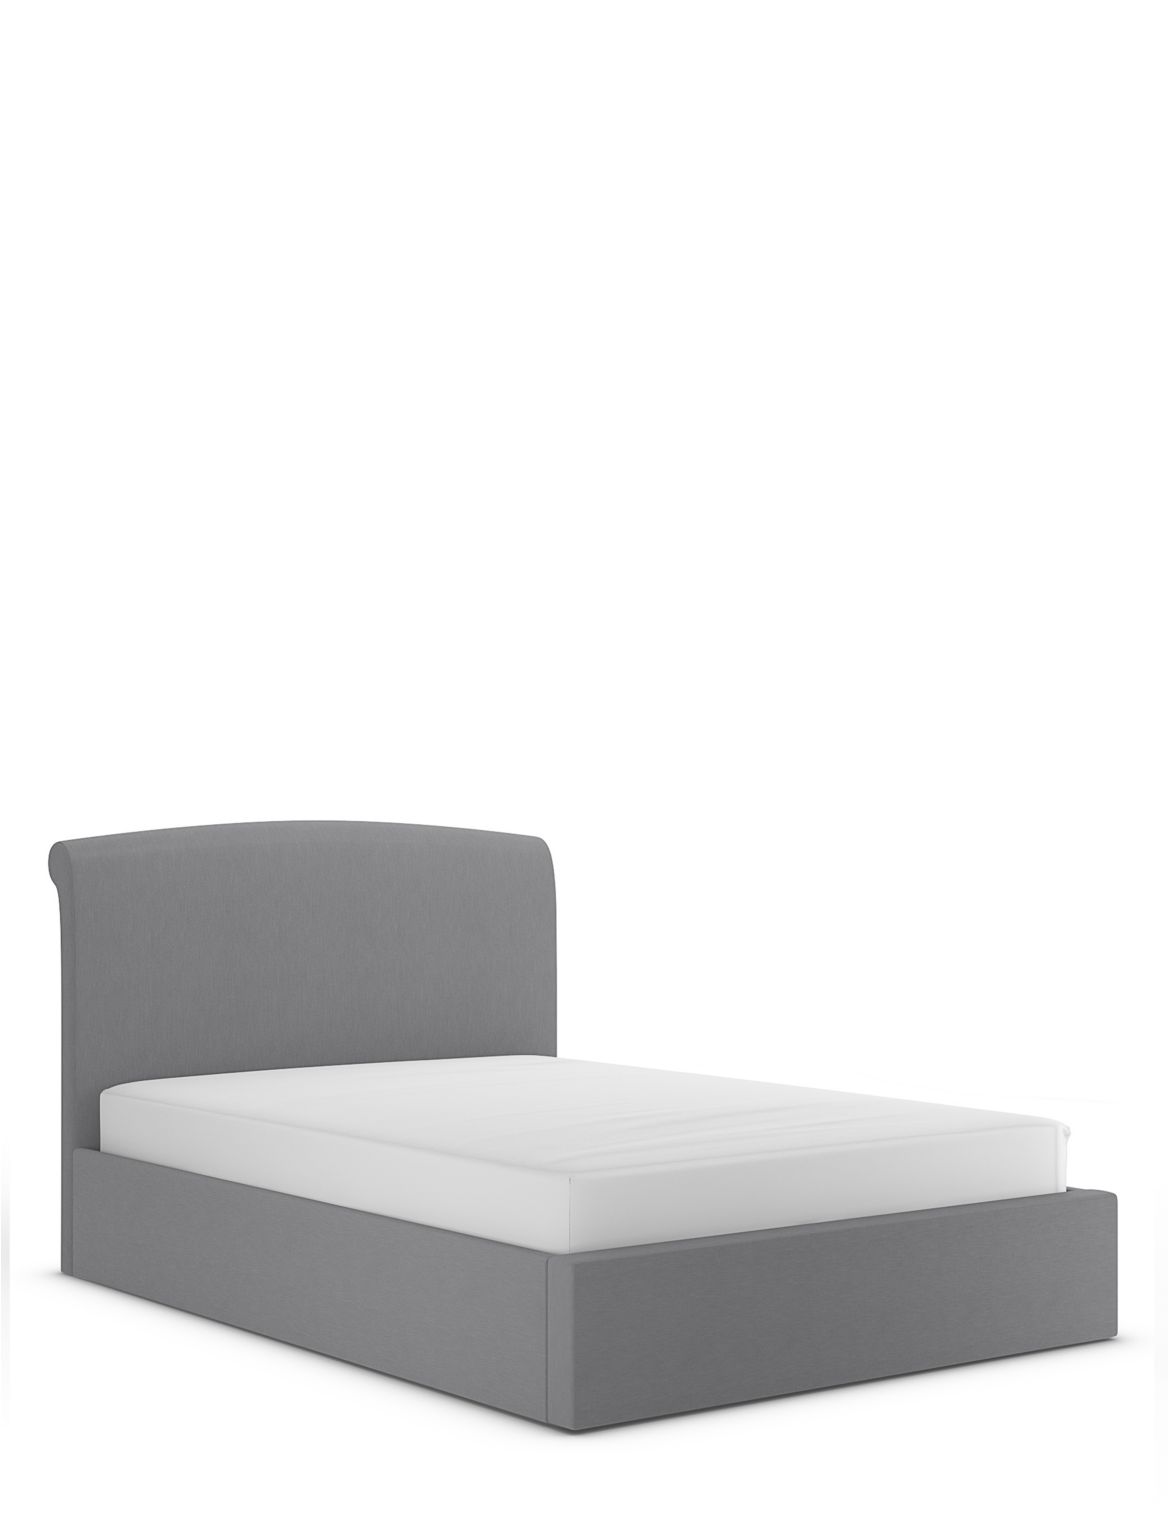 Cleo Ottoman Storage Bed grey